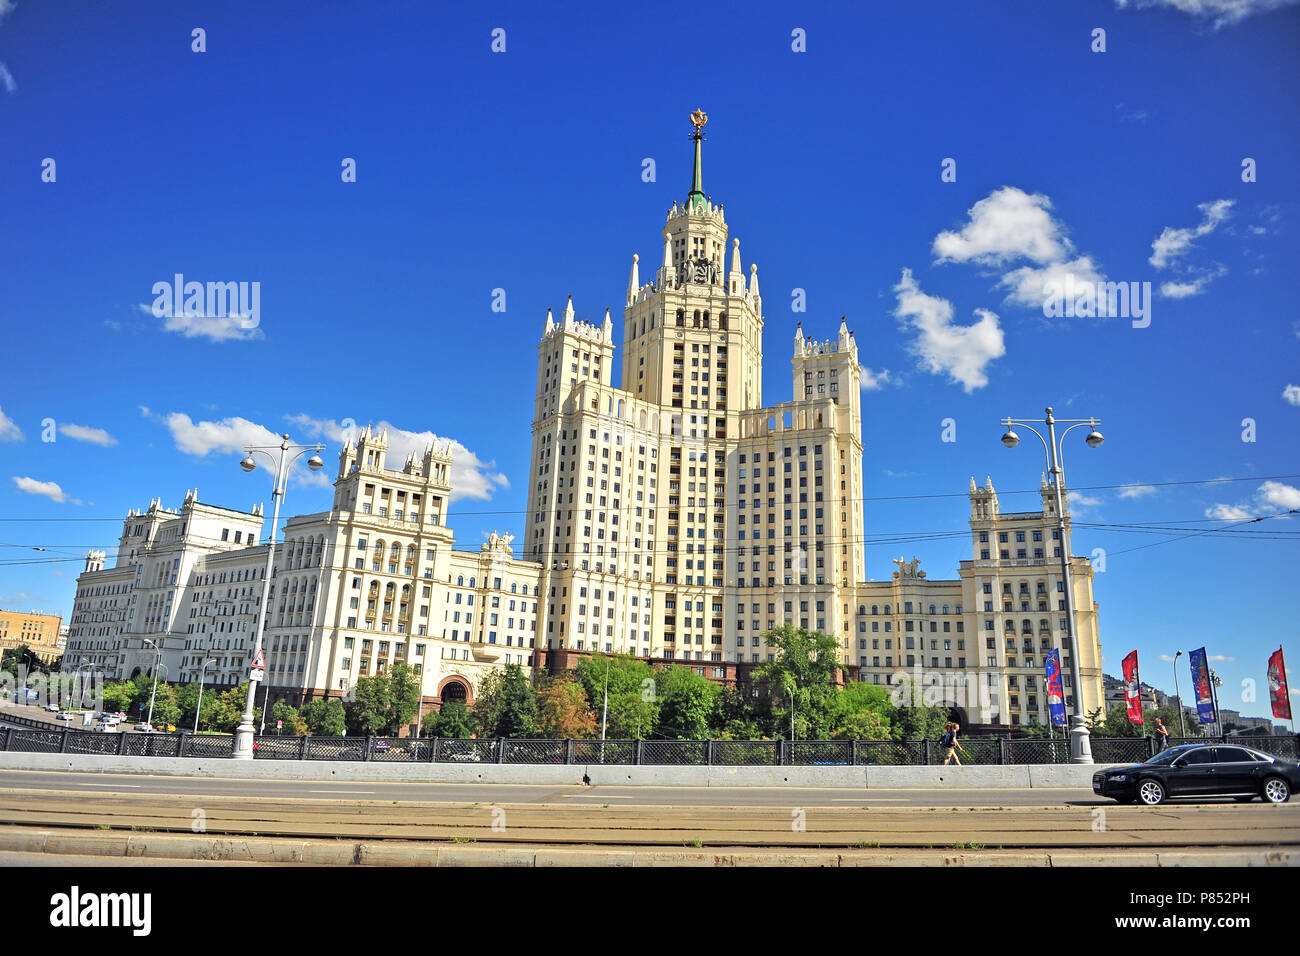 Mosca, Russia - Luglio 02: vista dell'edificio in Stalin Impero stile architettonico, Mosca, Russia il 2 luglio 2018. Foto Stock